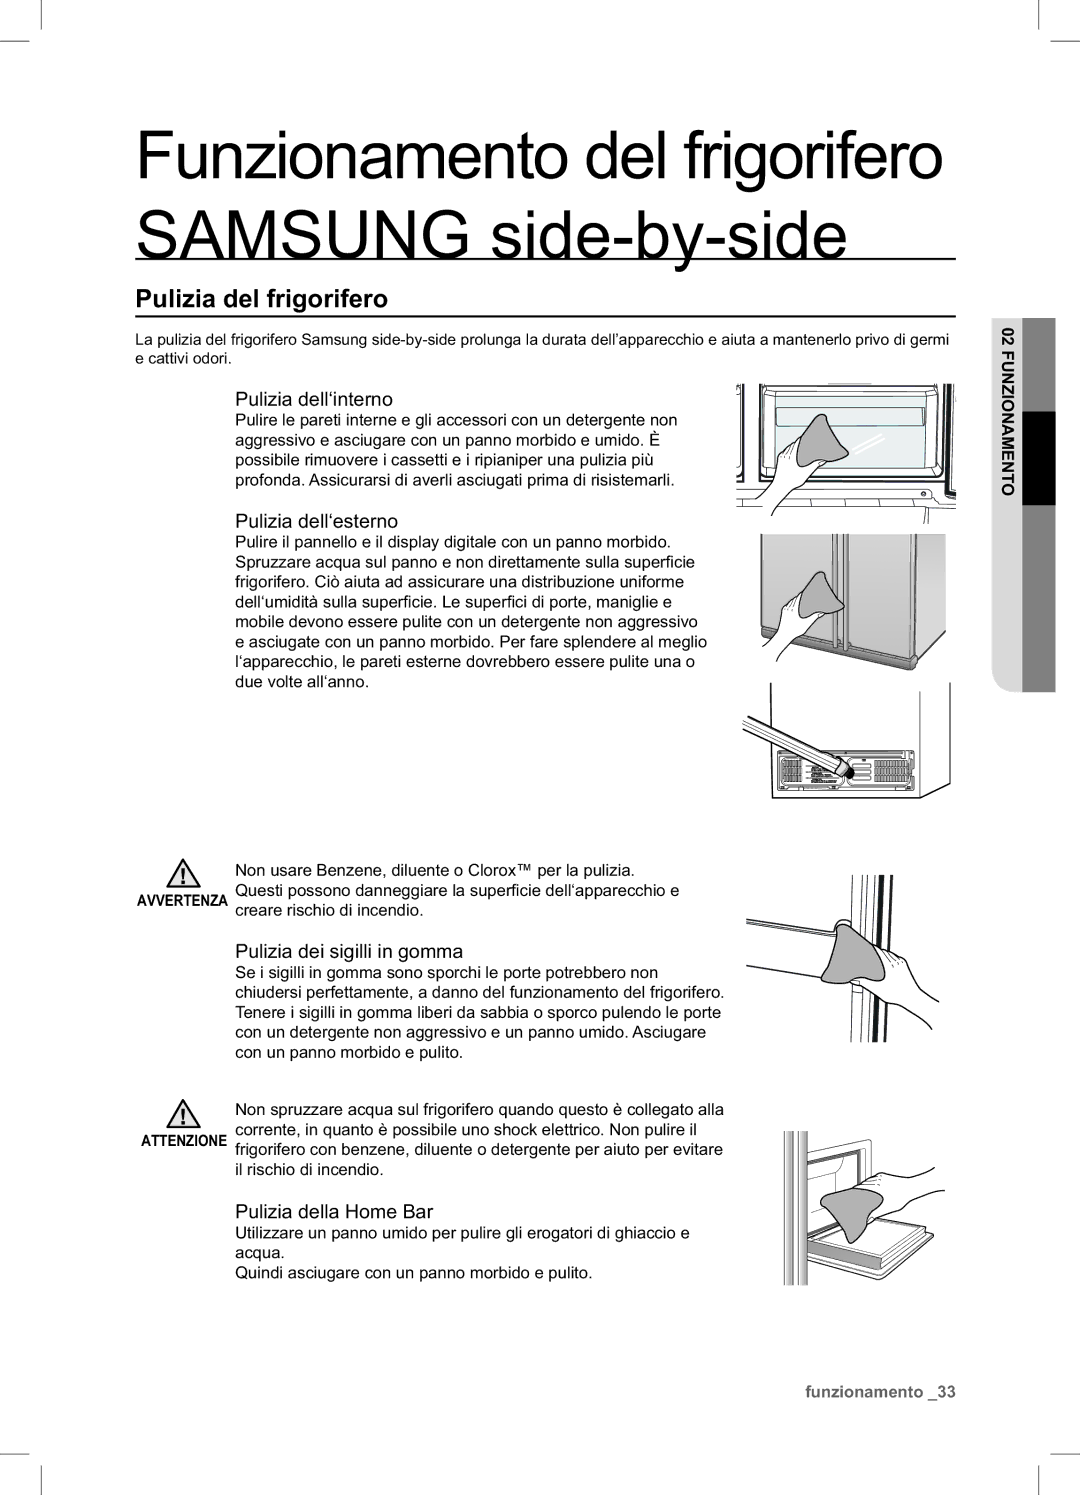 Samsung RSA1ZTTS1/XES Pulizia del frigorifero, Pulizia dell‘interno, Pulizia dell‘esterno, Pulizia dei sigilli in gomma 